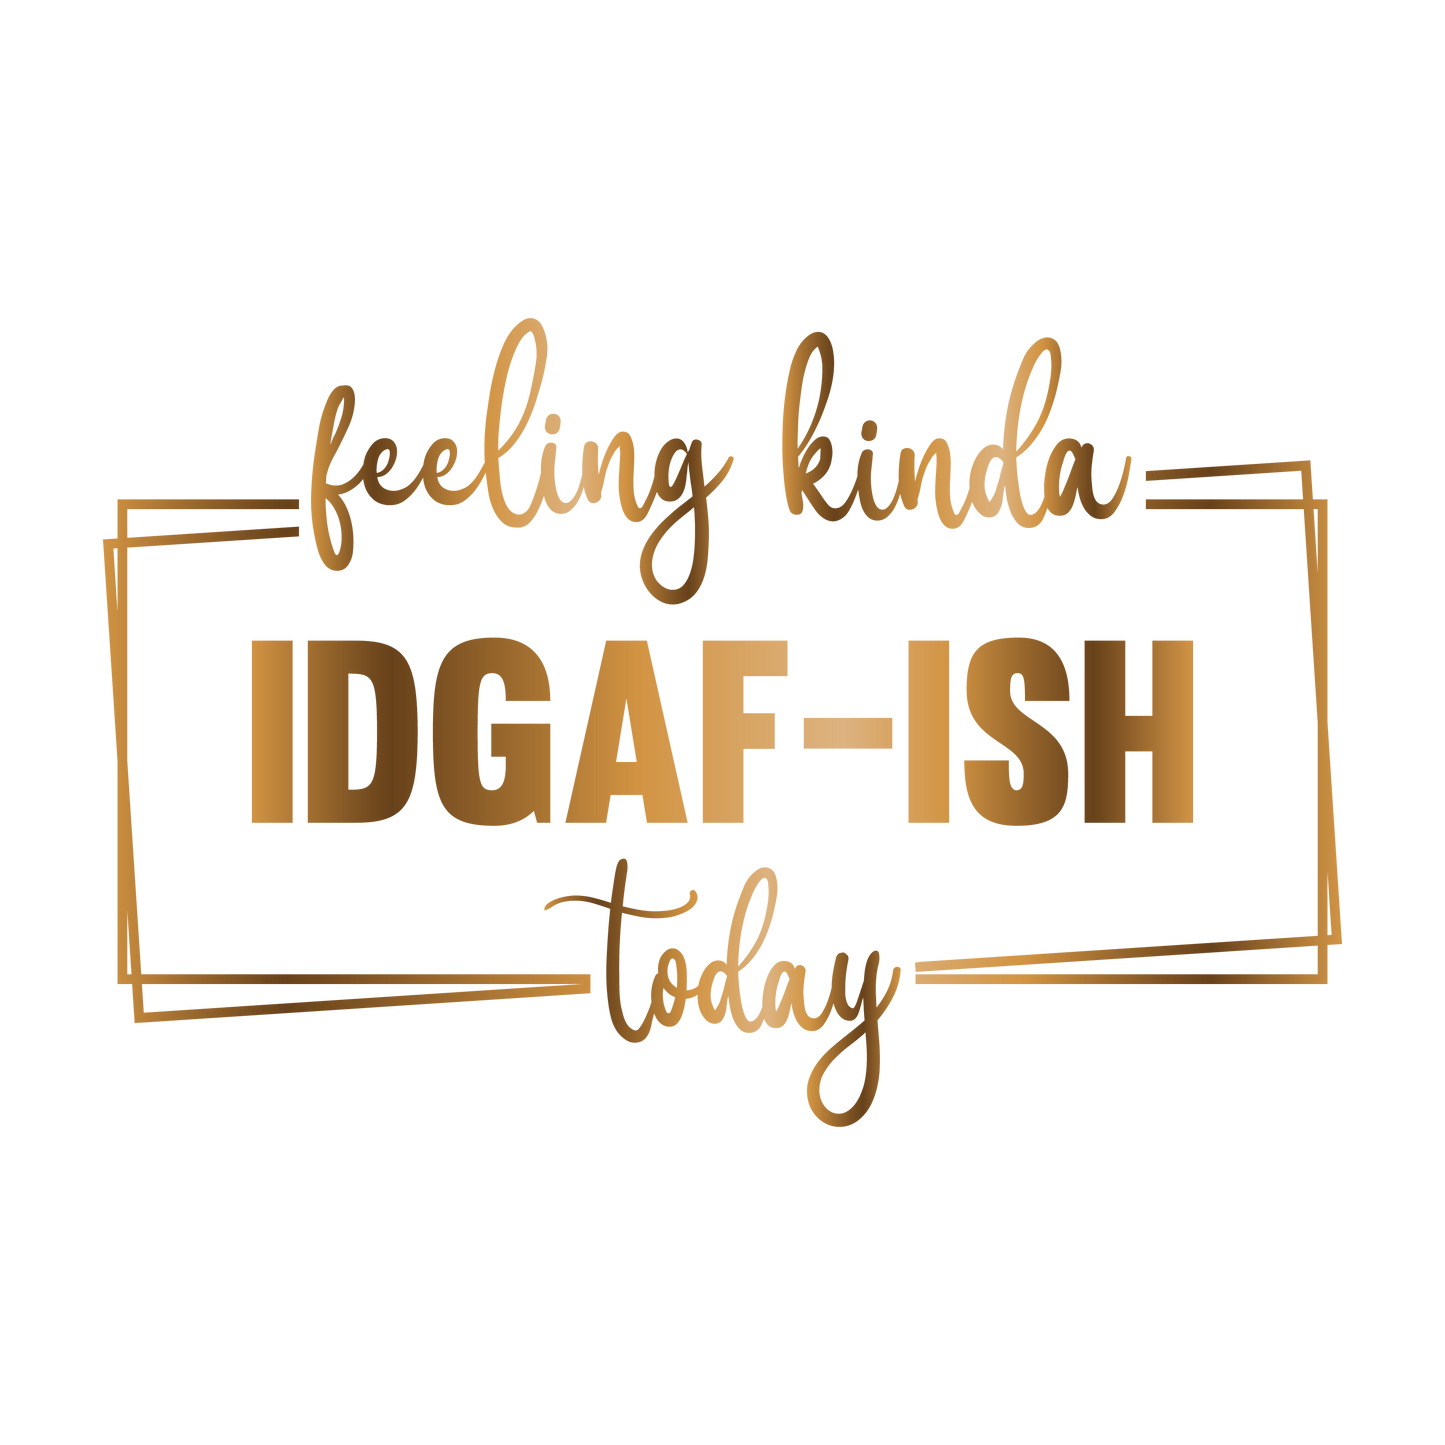 Feeling kinda of IDGAF-ISH today